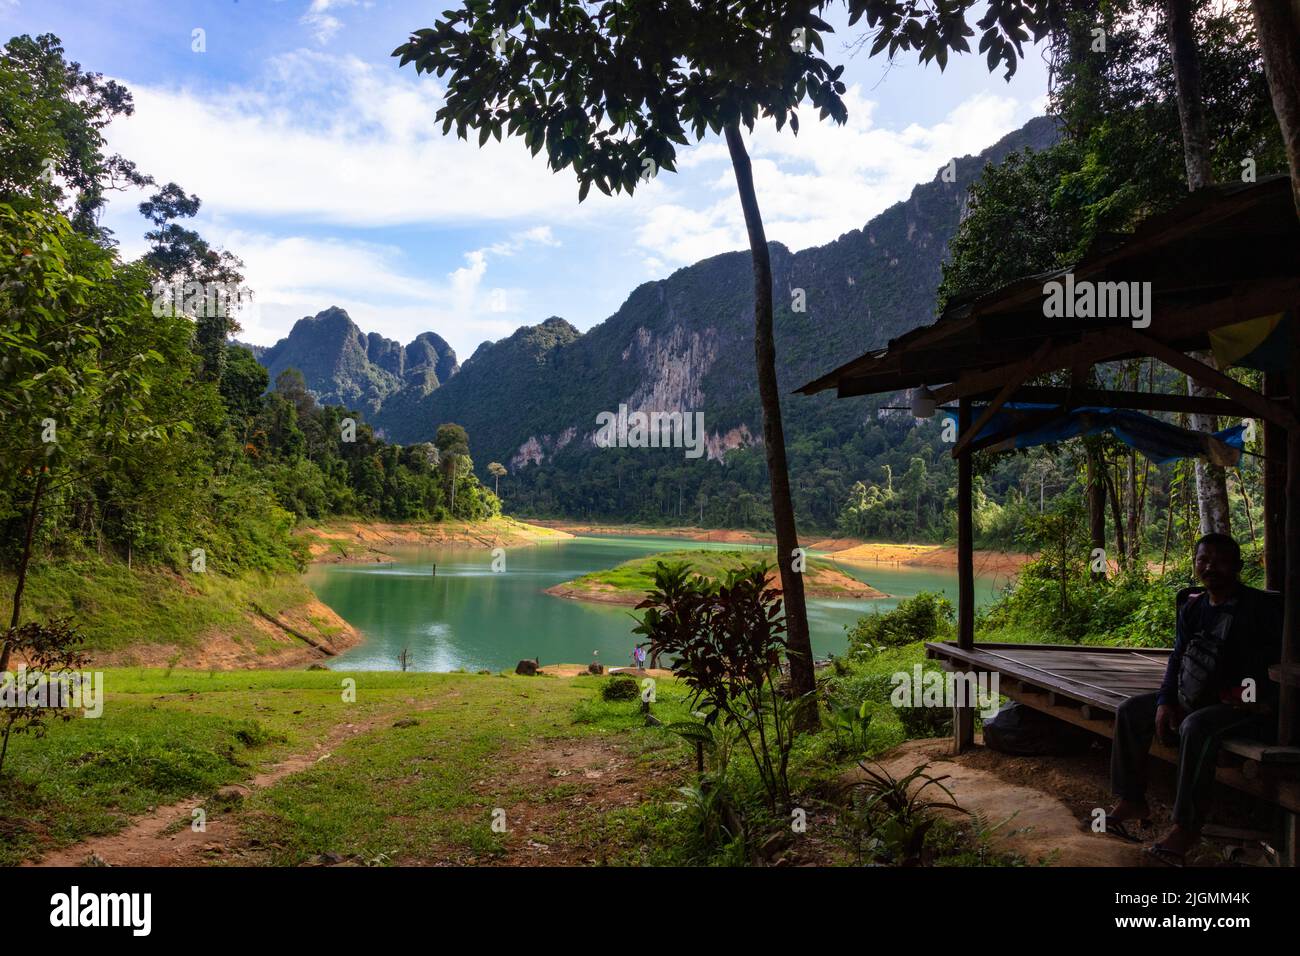 El lago Cheow lan en el Parque Nacional Khao Sok está rodeado de bosques tropicales y formaciones kársticas - KHAO Sok, TAILANDIA Foto de stock